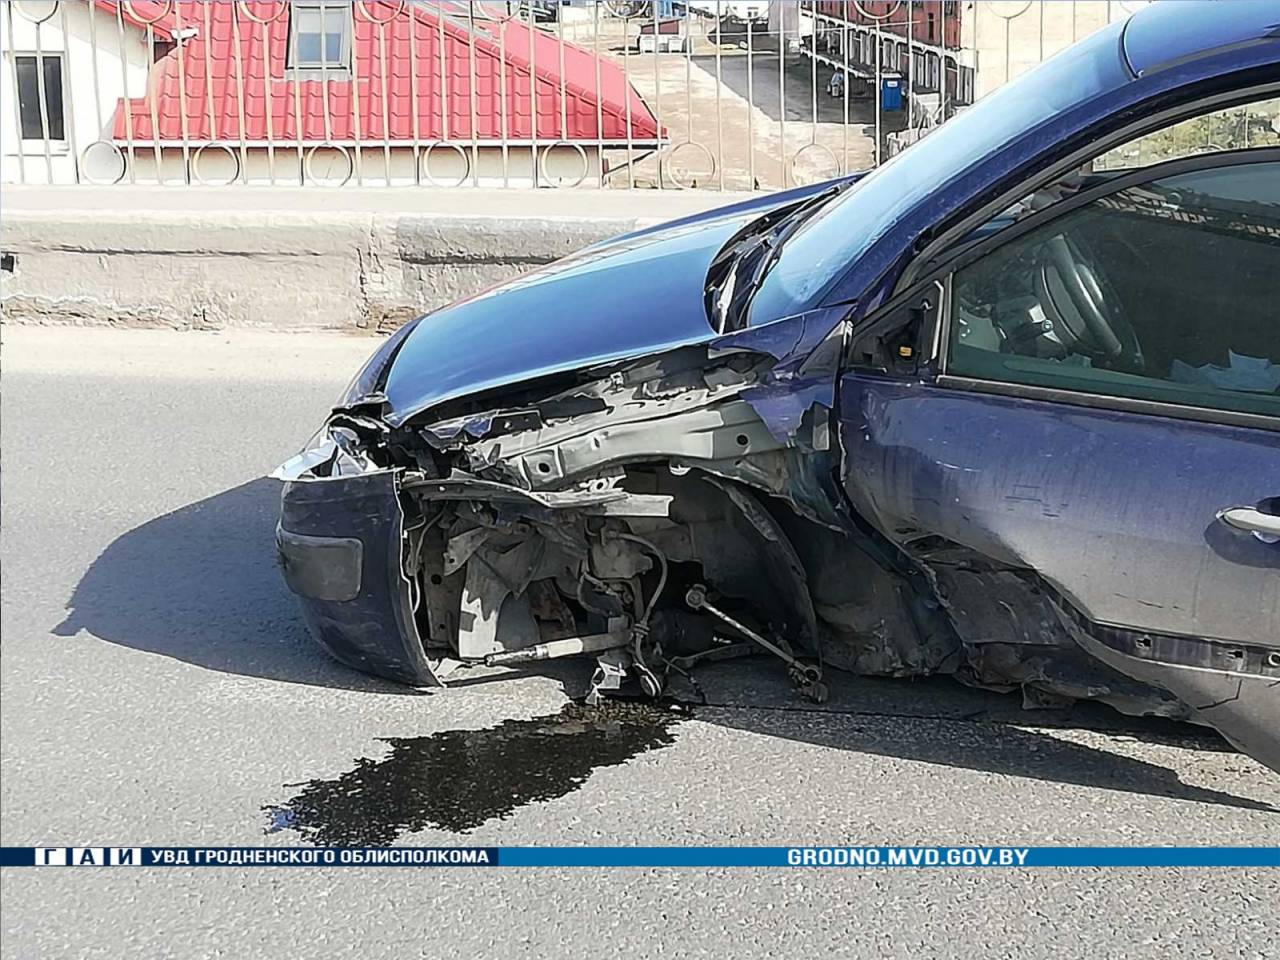 У Renault от удара вырвало колесо: в Гродно на перекрестке Купалы - Победы водитель просто поехал по встречной в лоб потоку